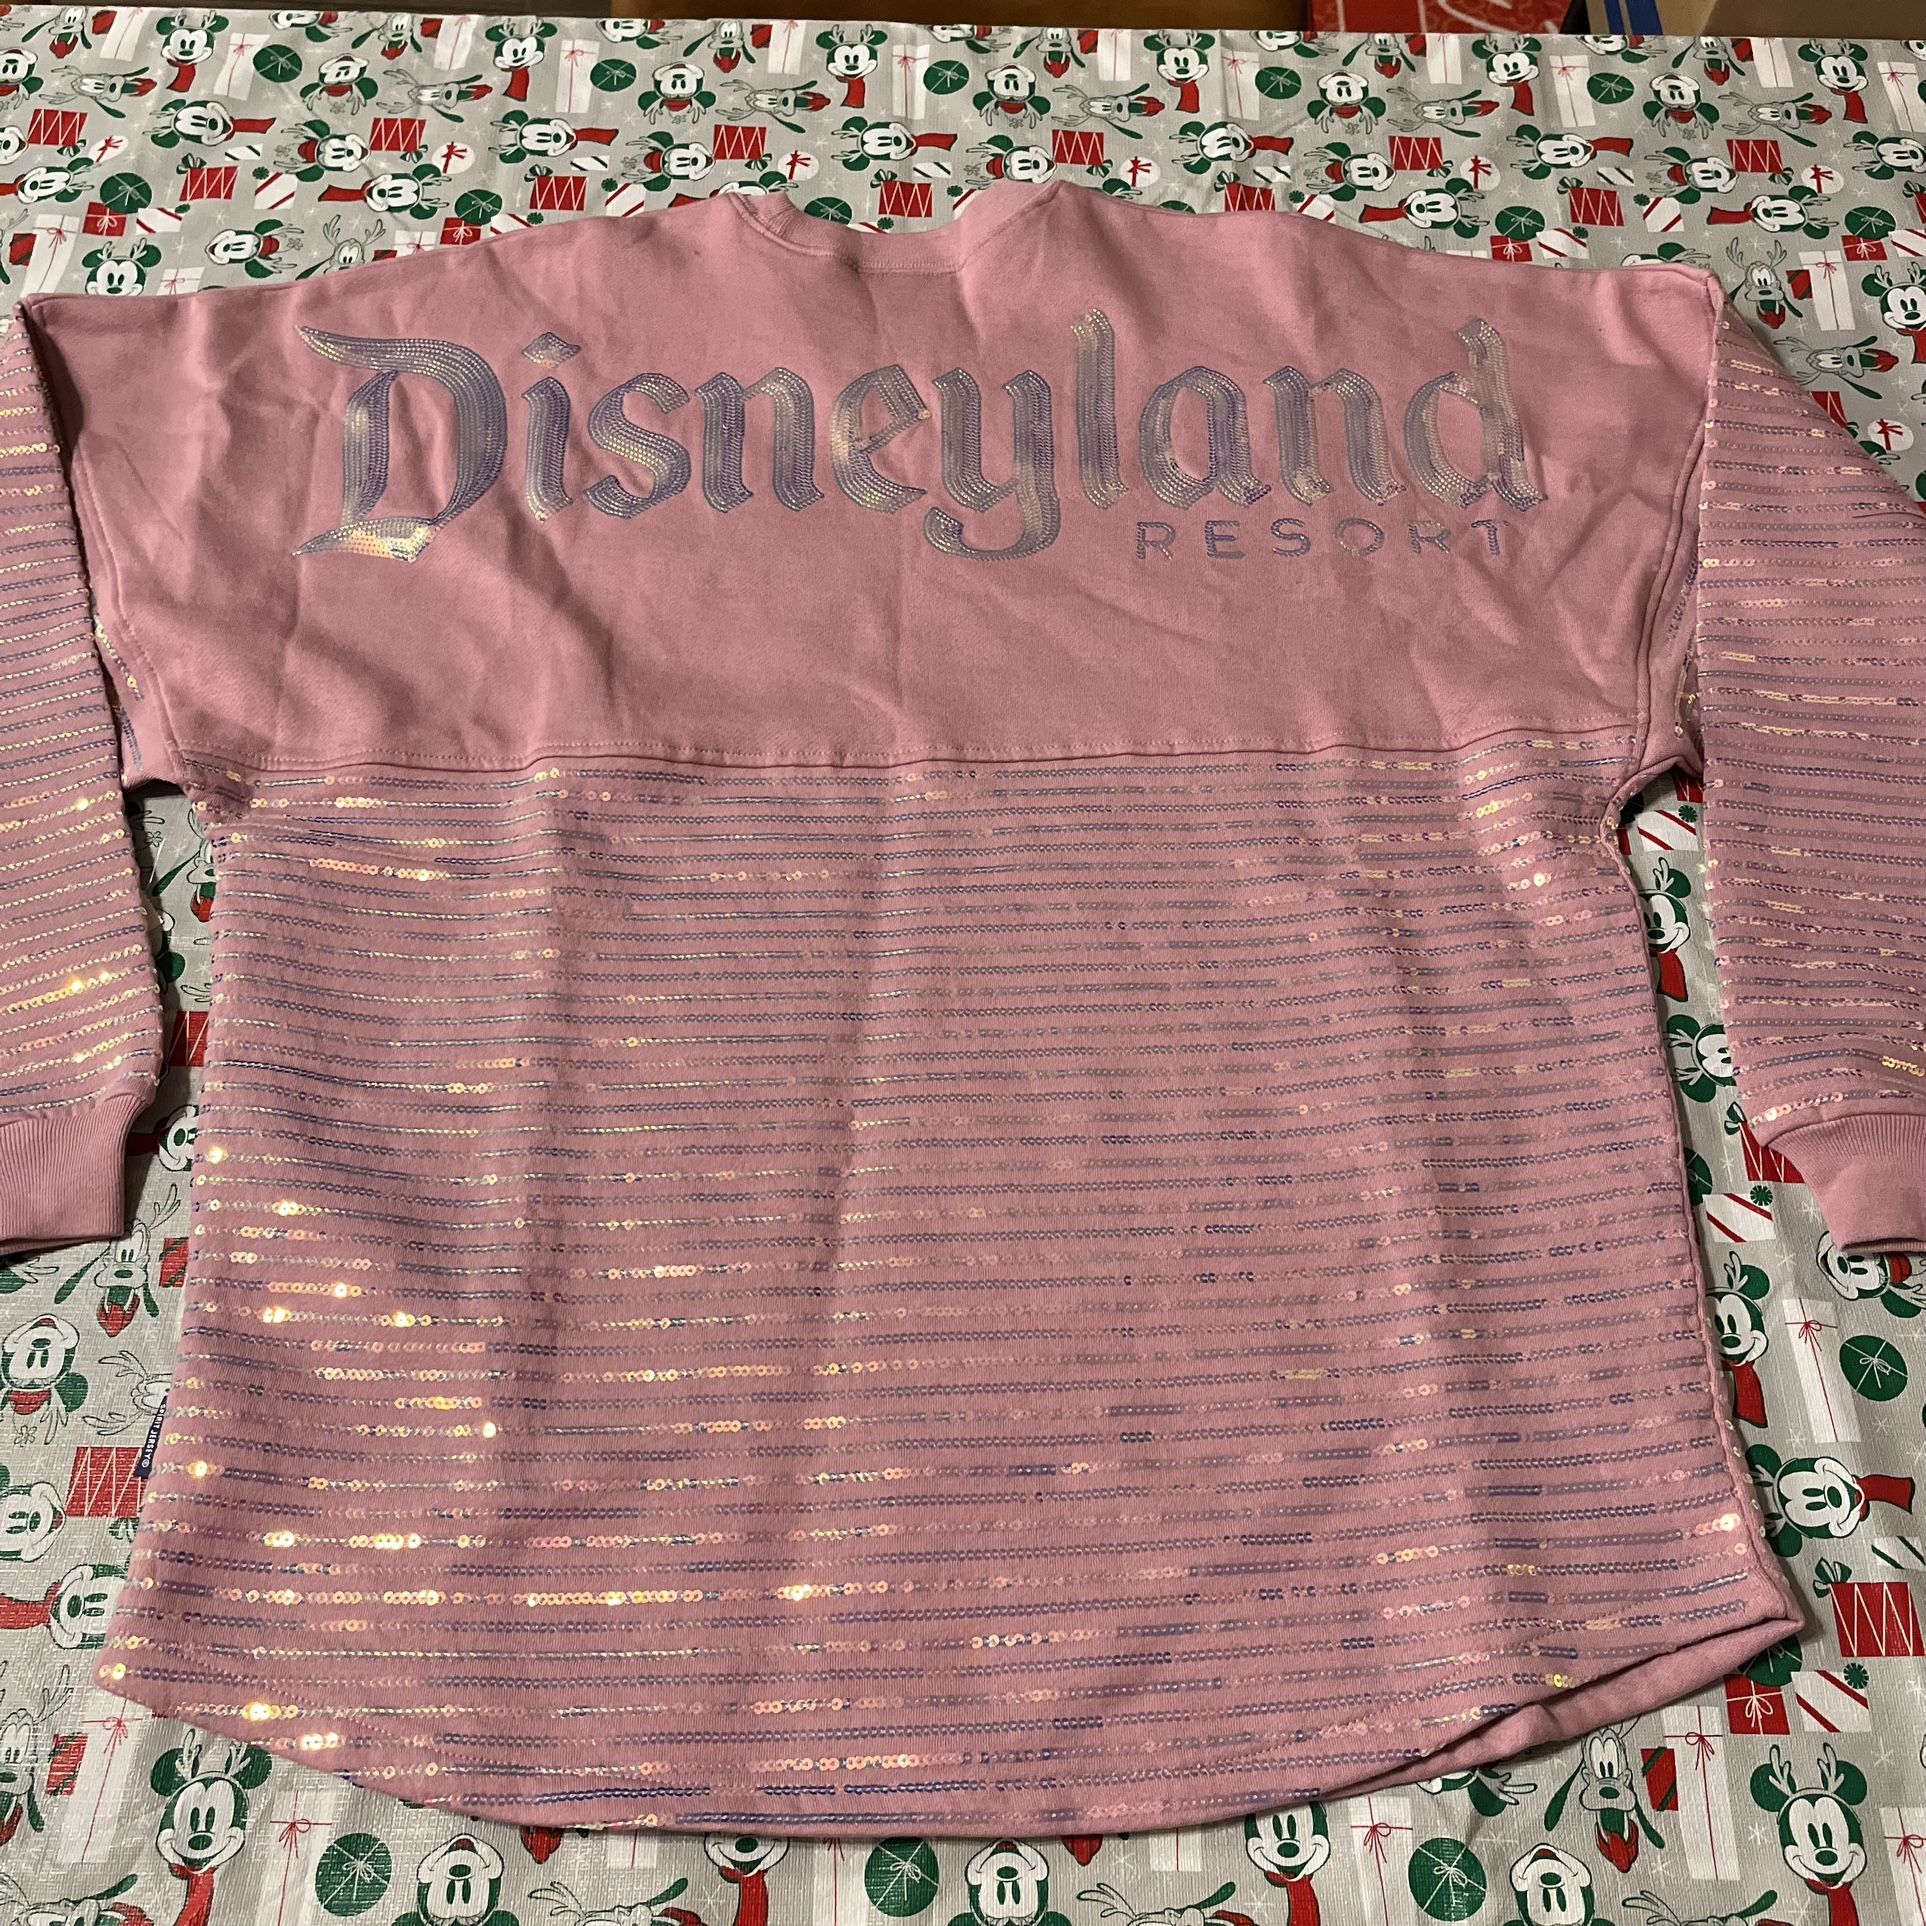 Disneyland Spirit Jersey Pink Shimmer Shiny Sequins Size Large